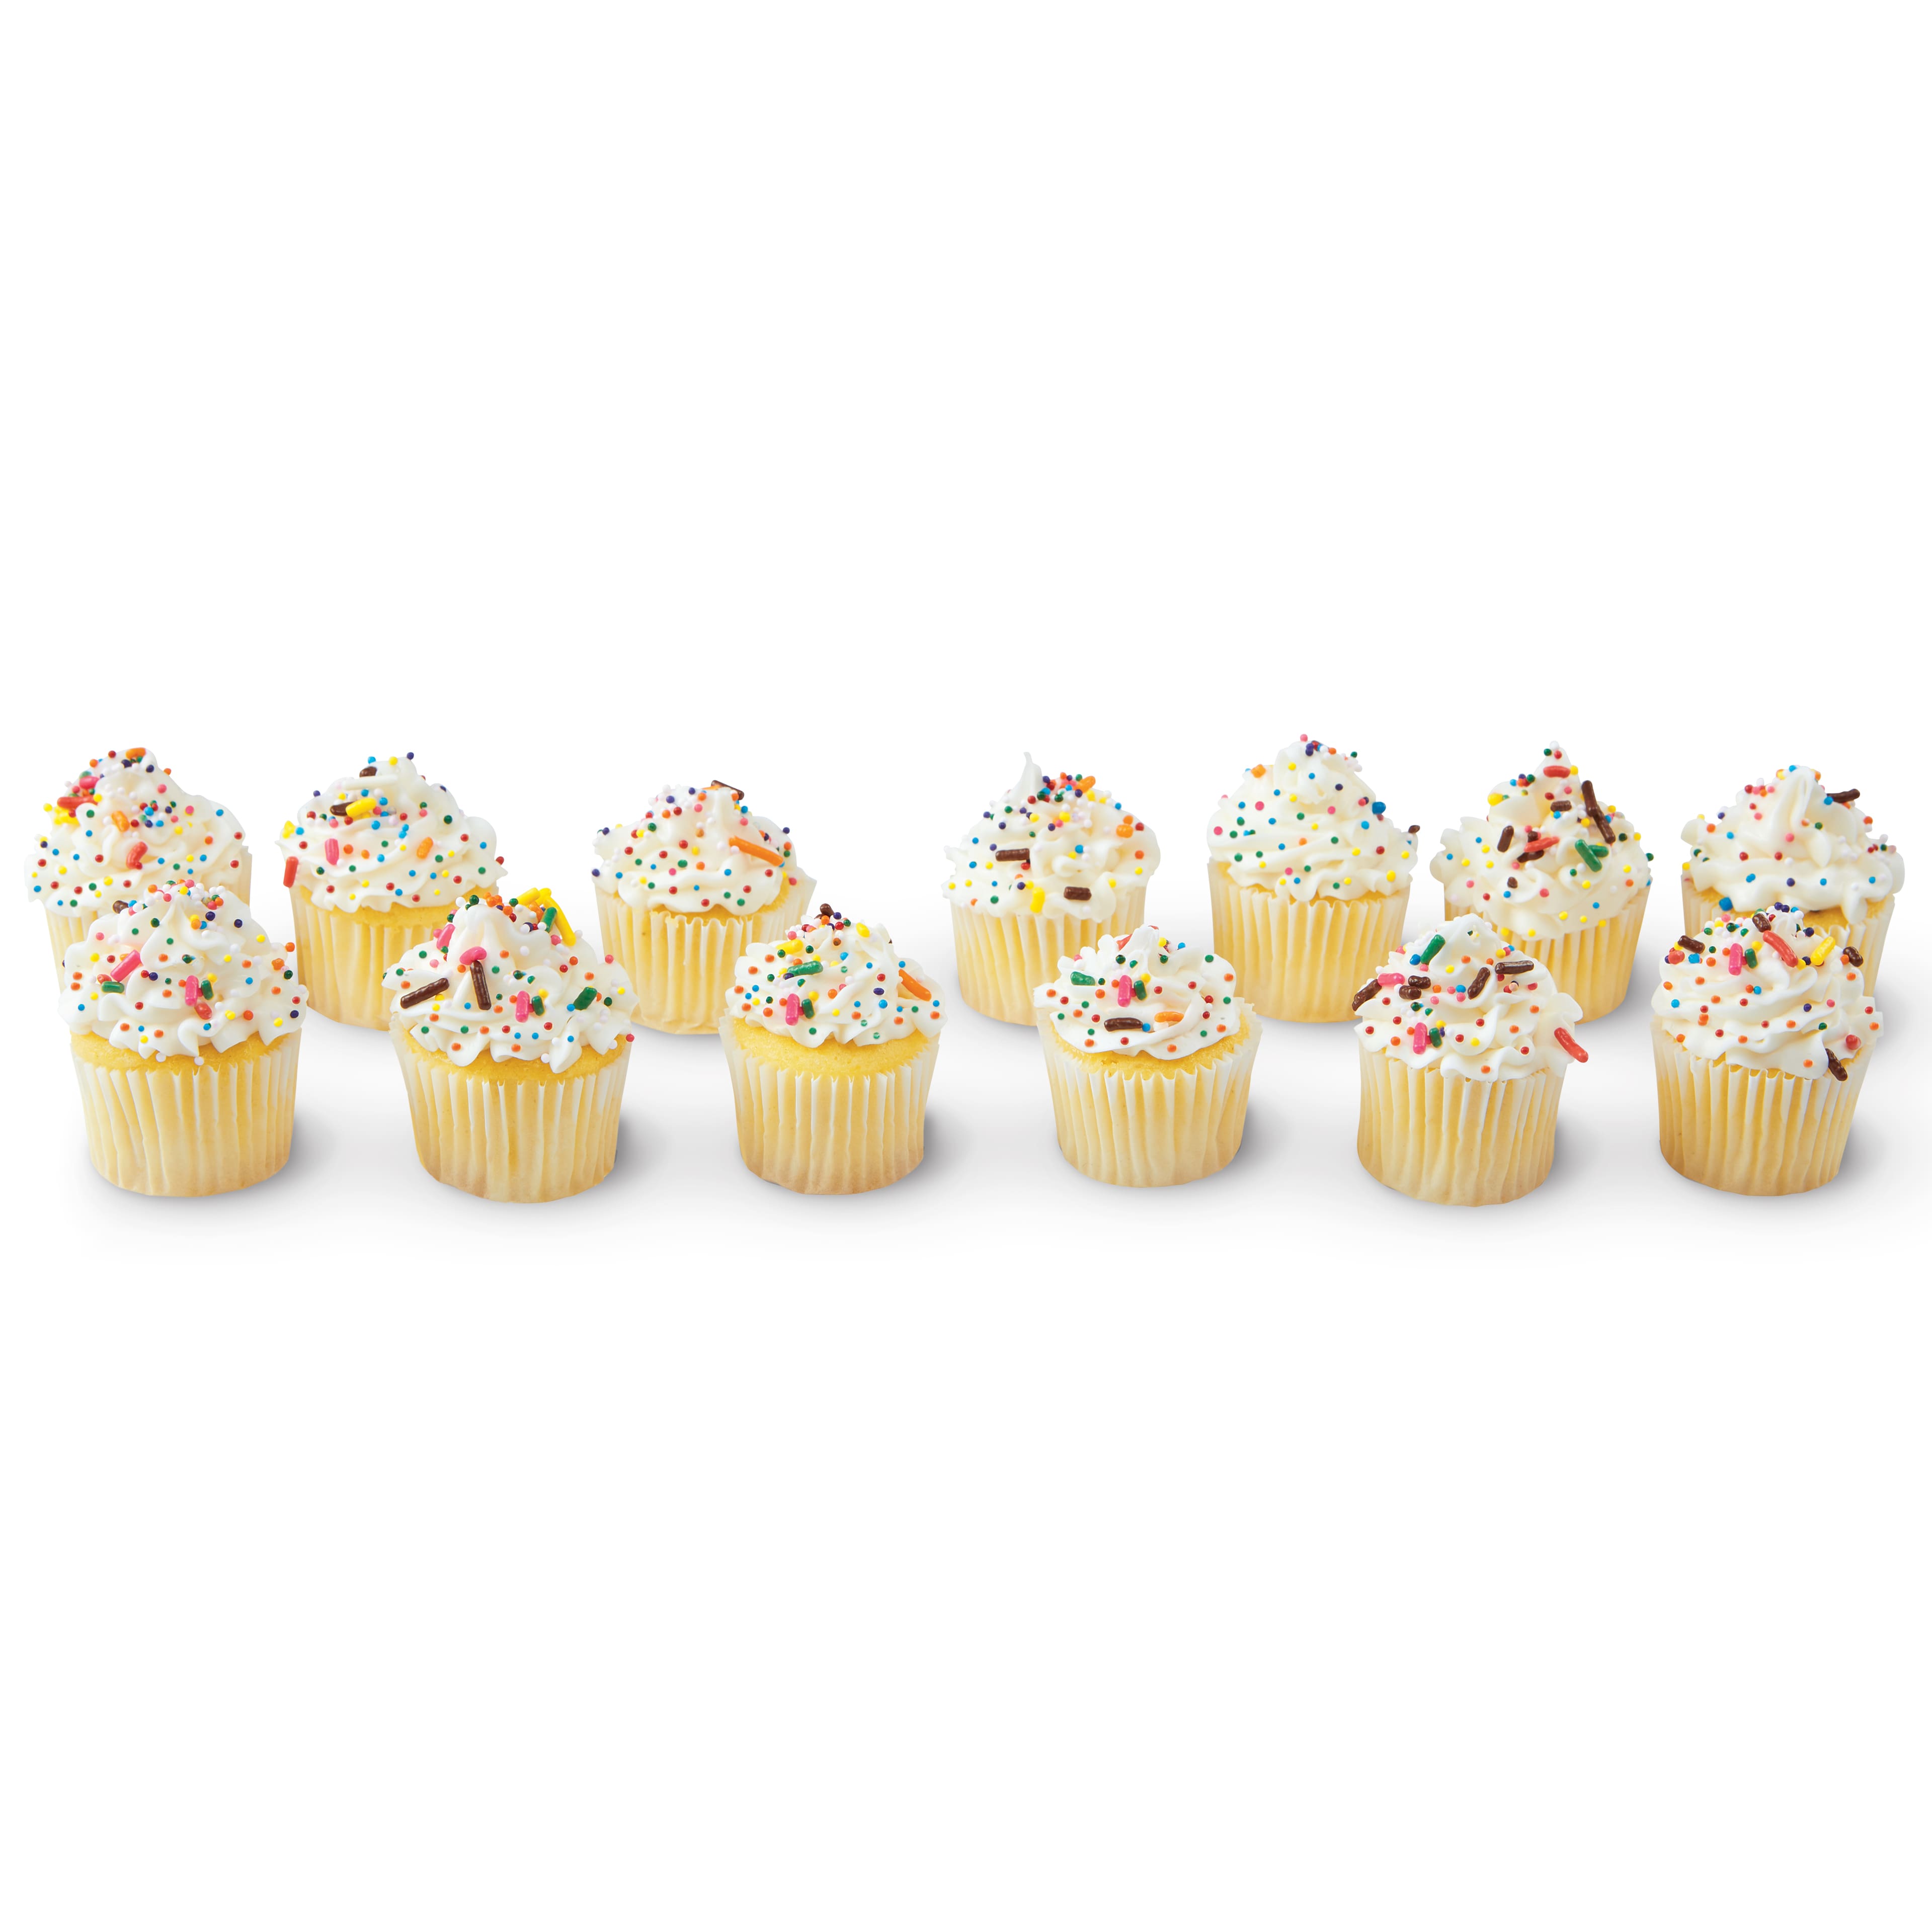 Katbite Silicone Mini Muffin Pan 24 Cups Cupcake Pan Food Grade